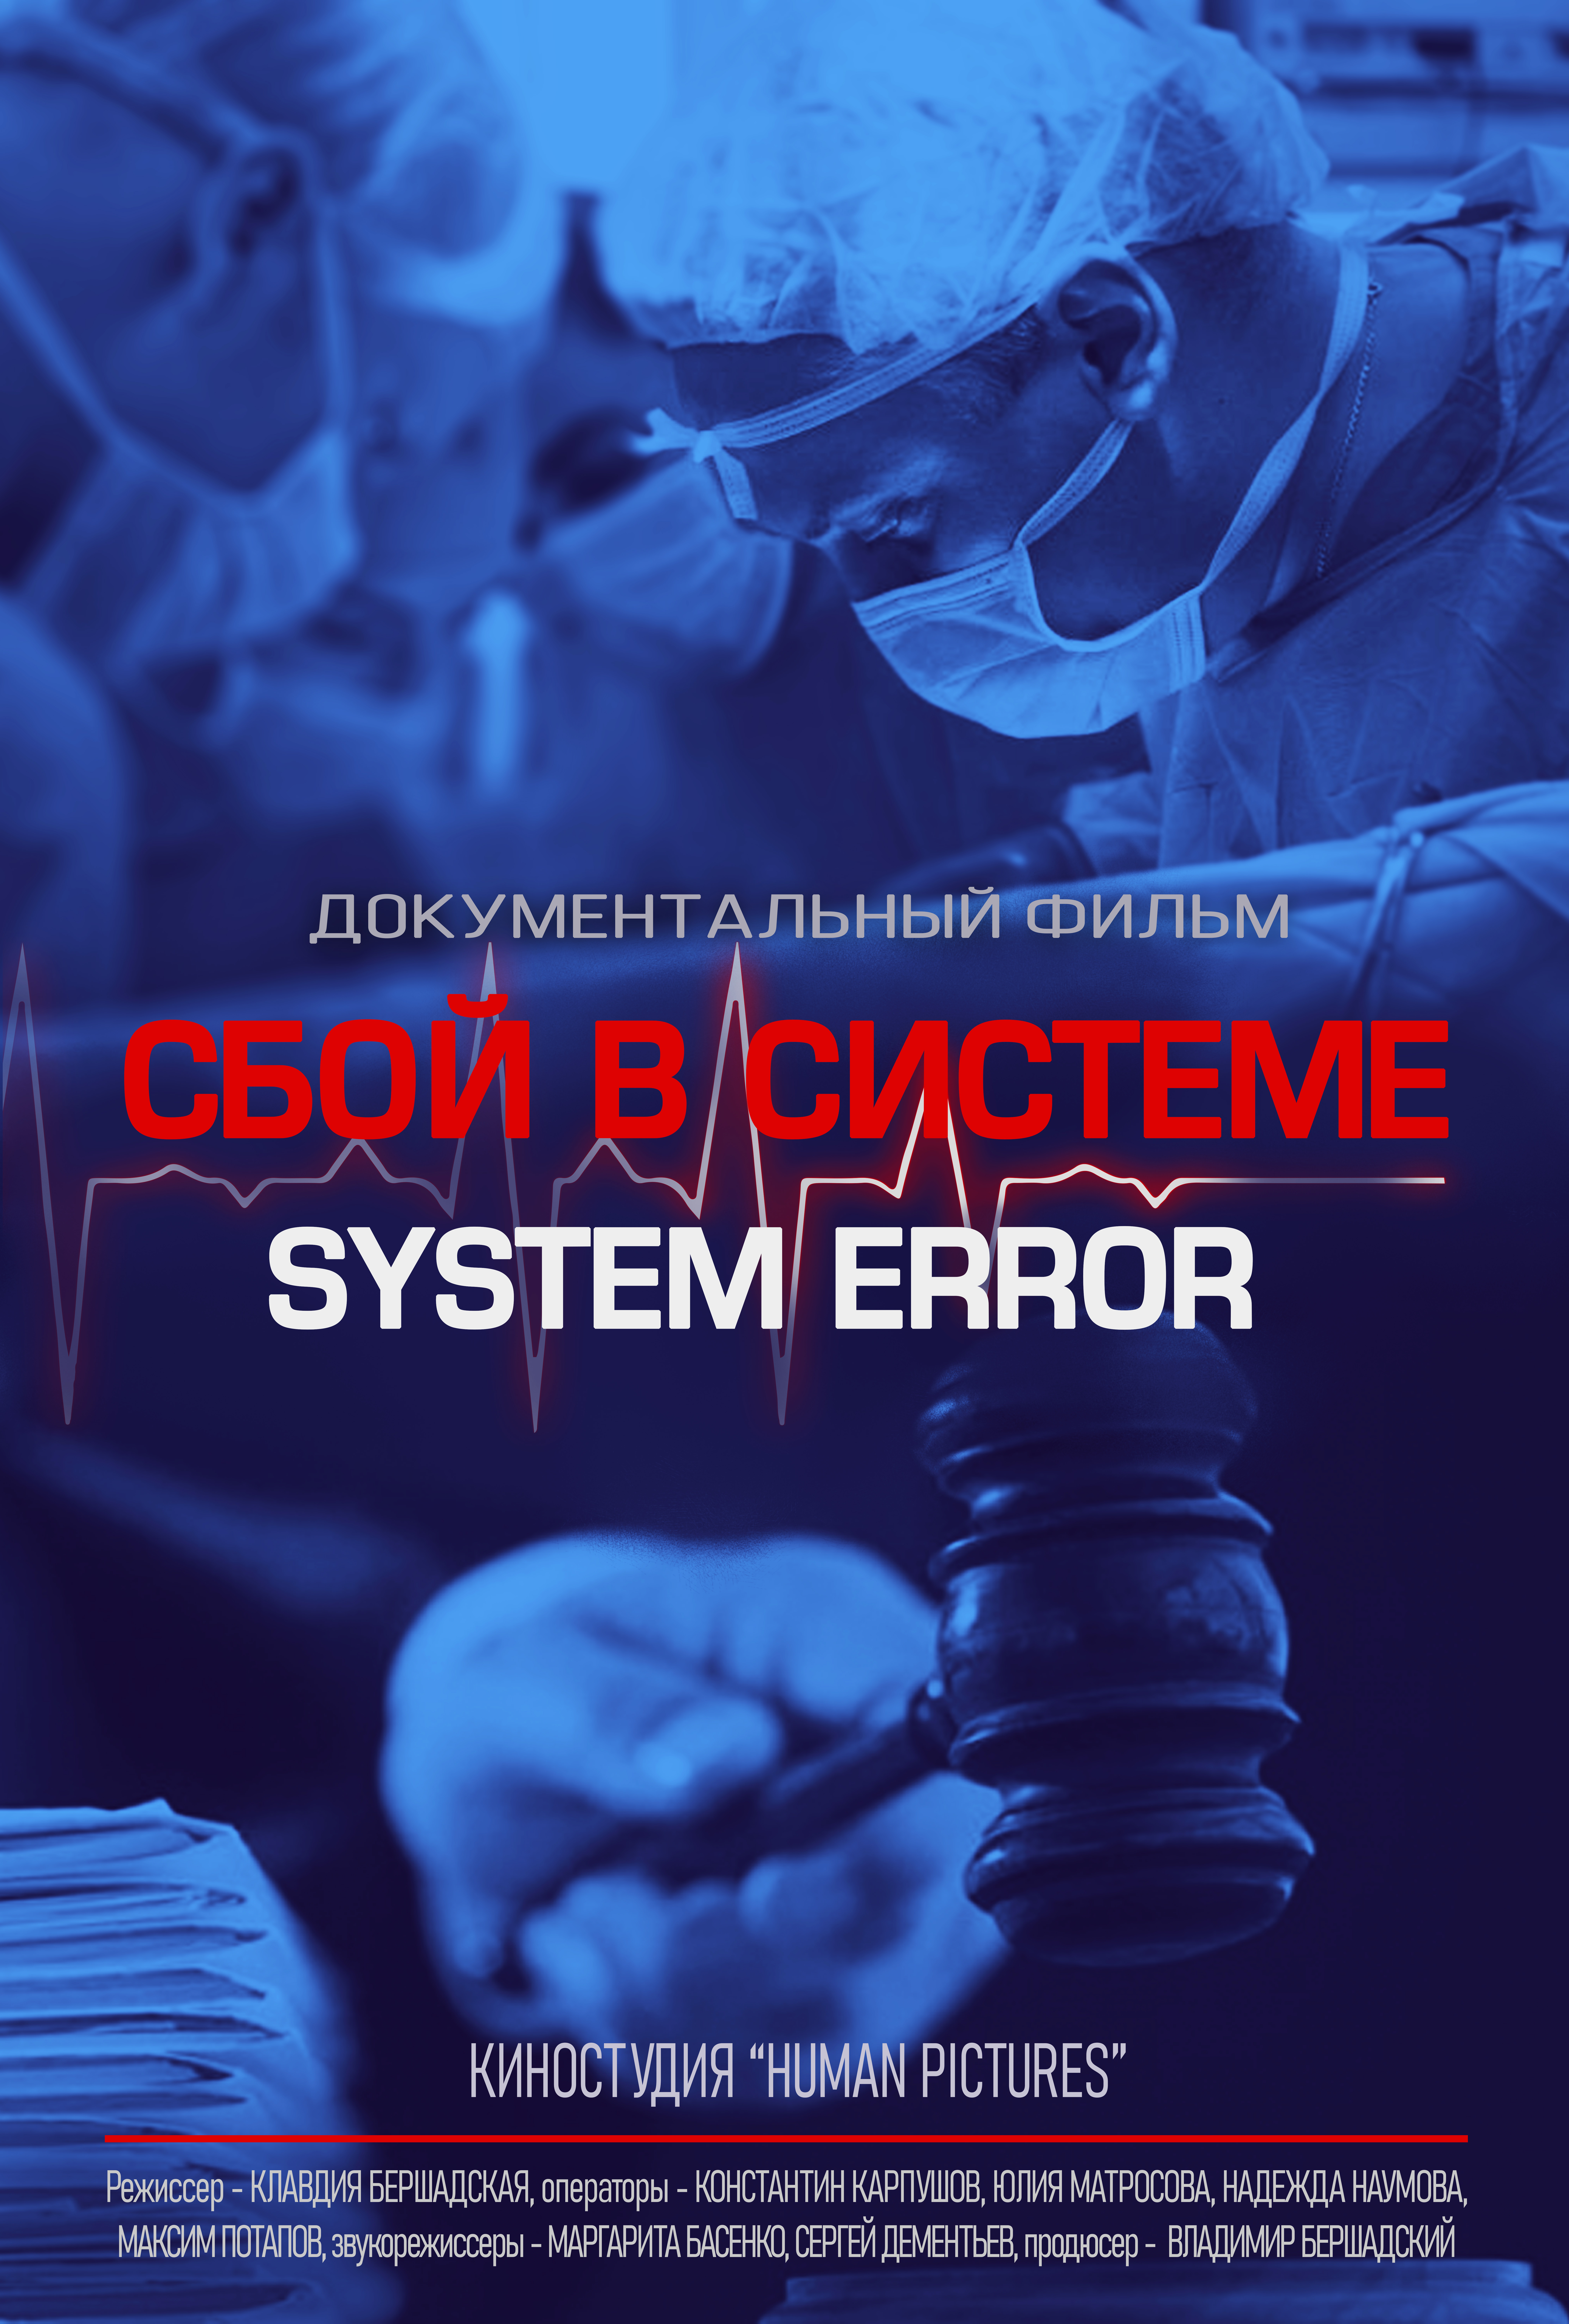 Docfilm "SYSTEM ERROR/СБОЙ В СИСТЕМЕ"